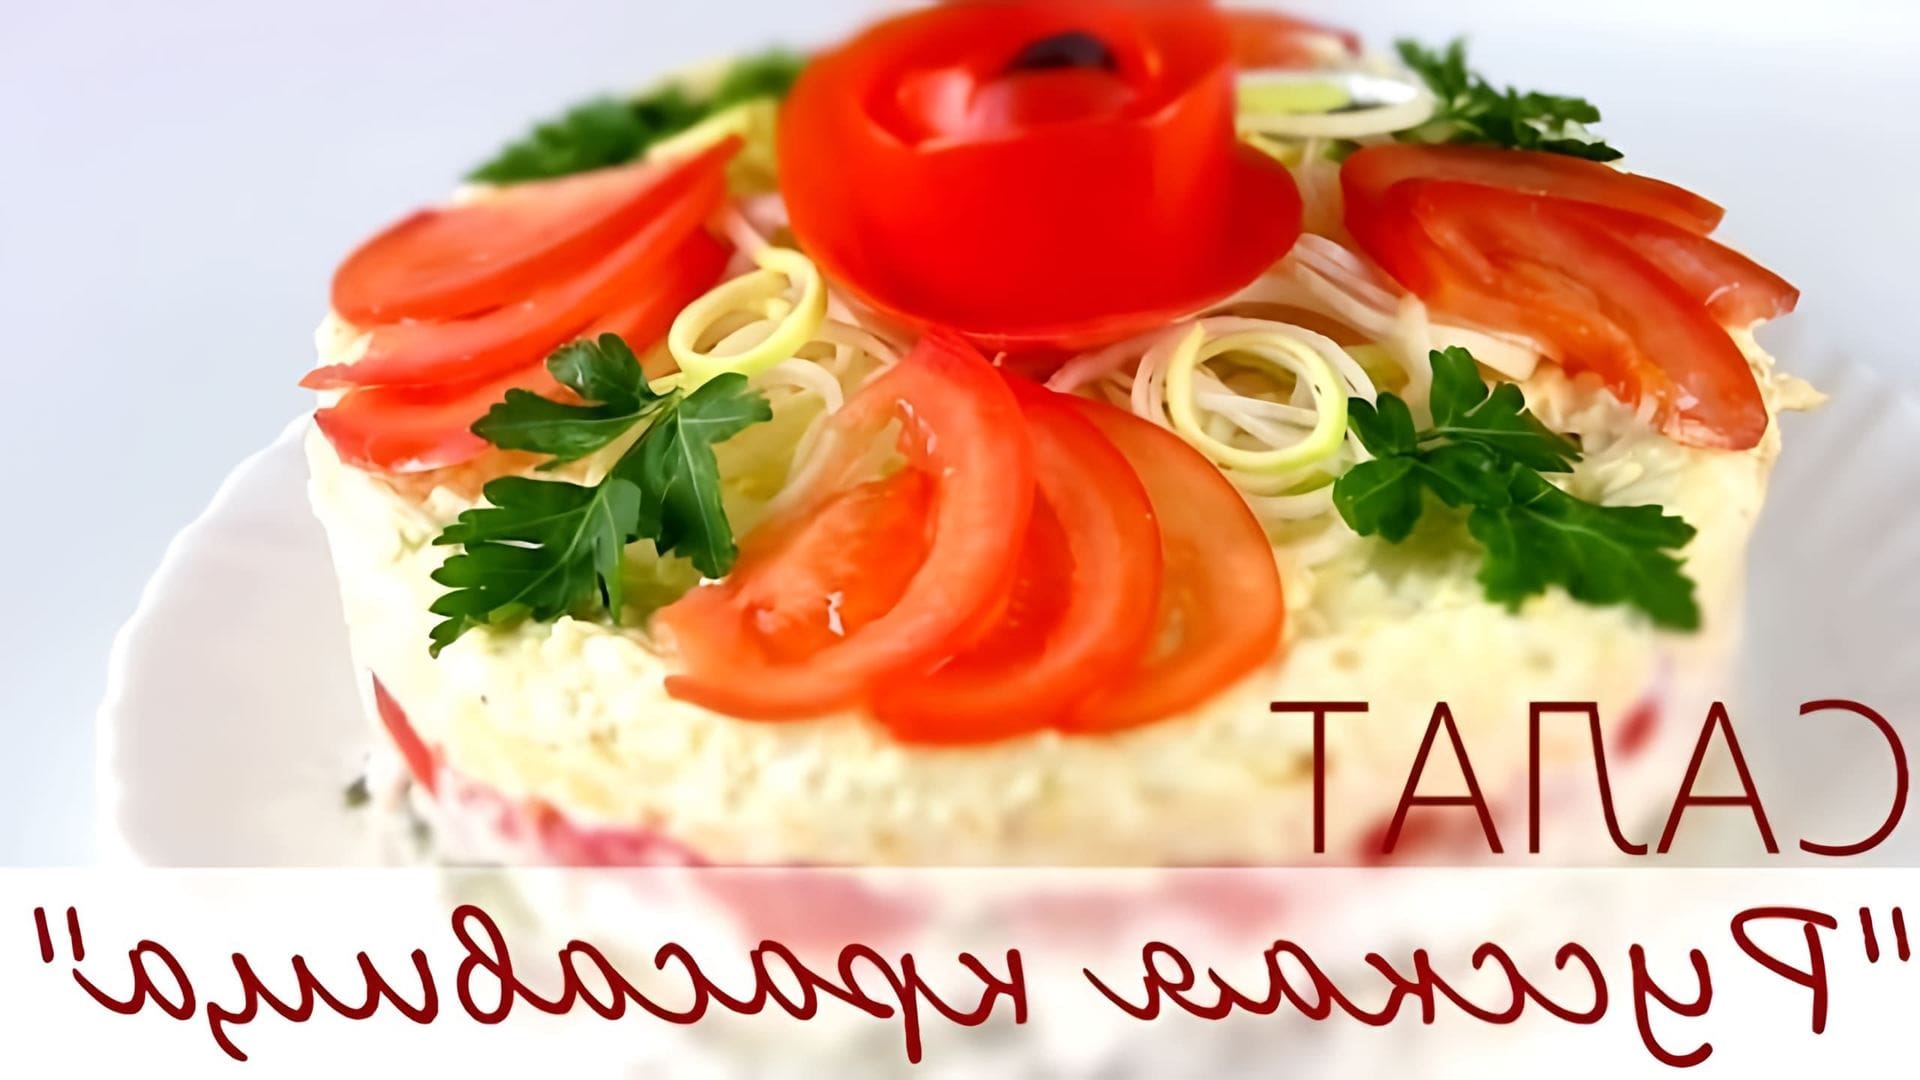 В этом видео демонстрируется процесс приготовления салата "Русская красавица", который напоминает классический салат "Оливье"